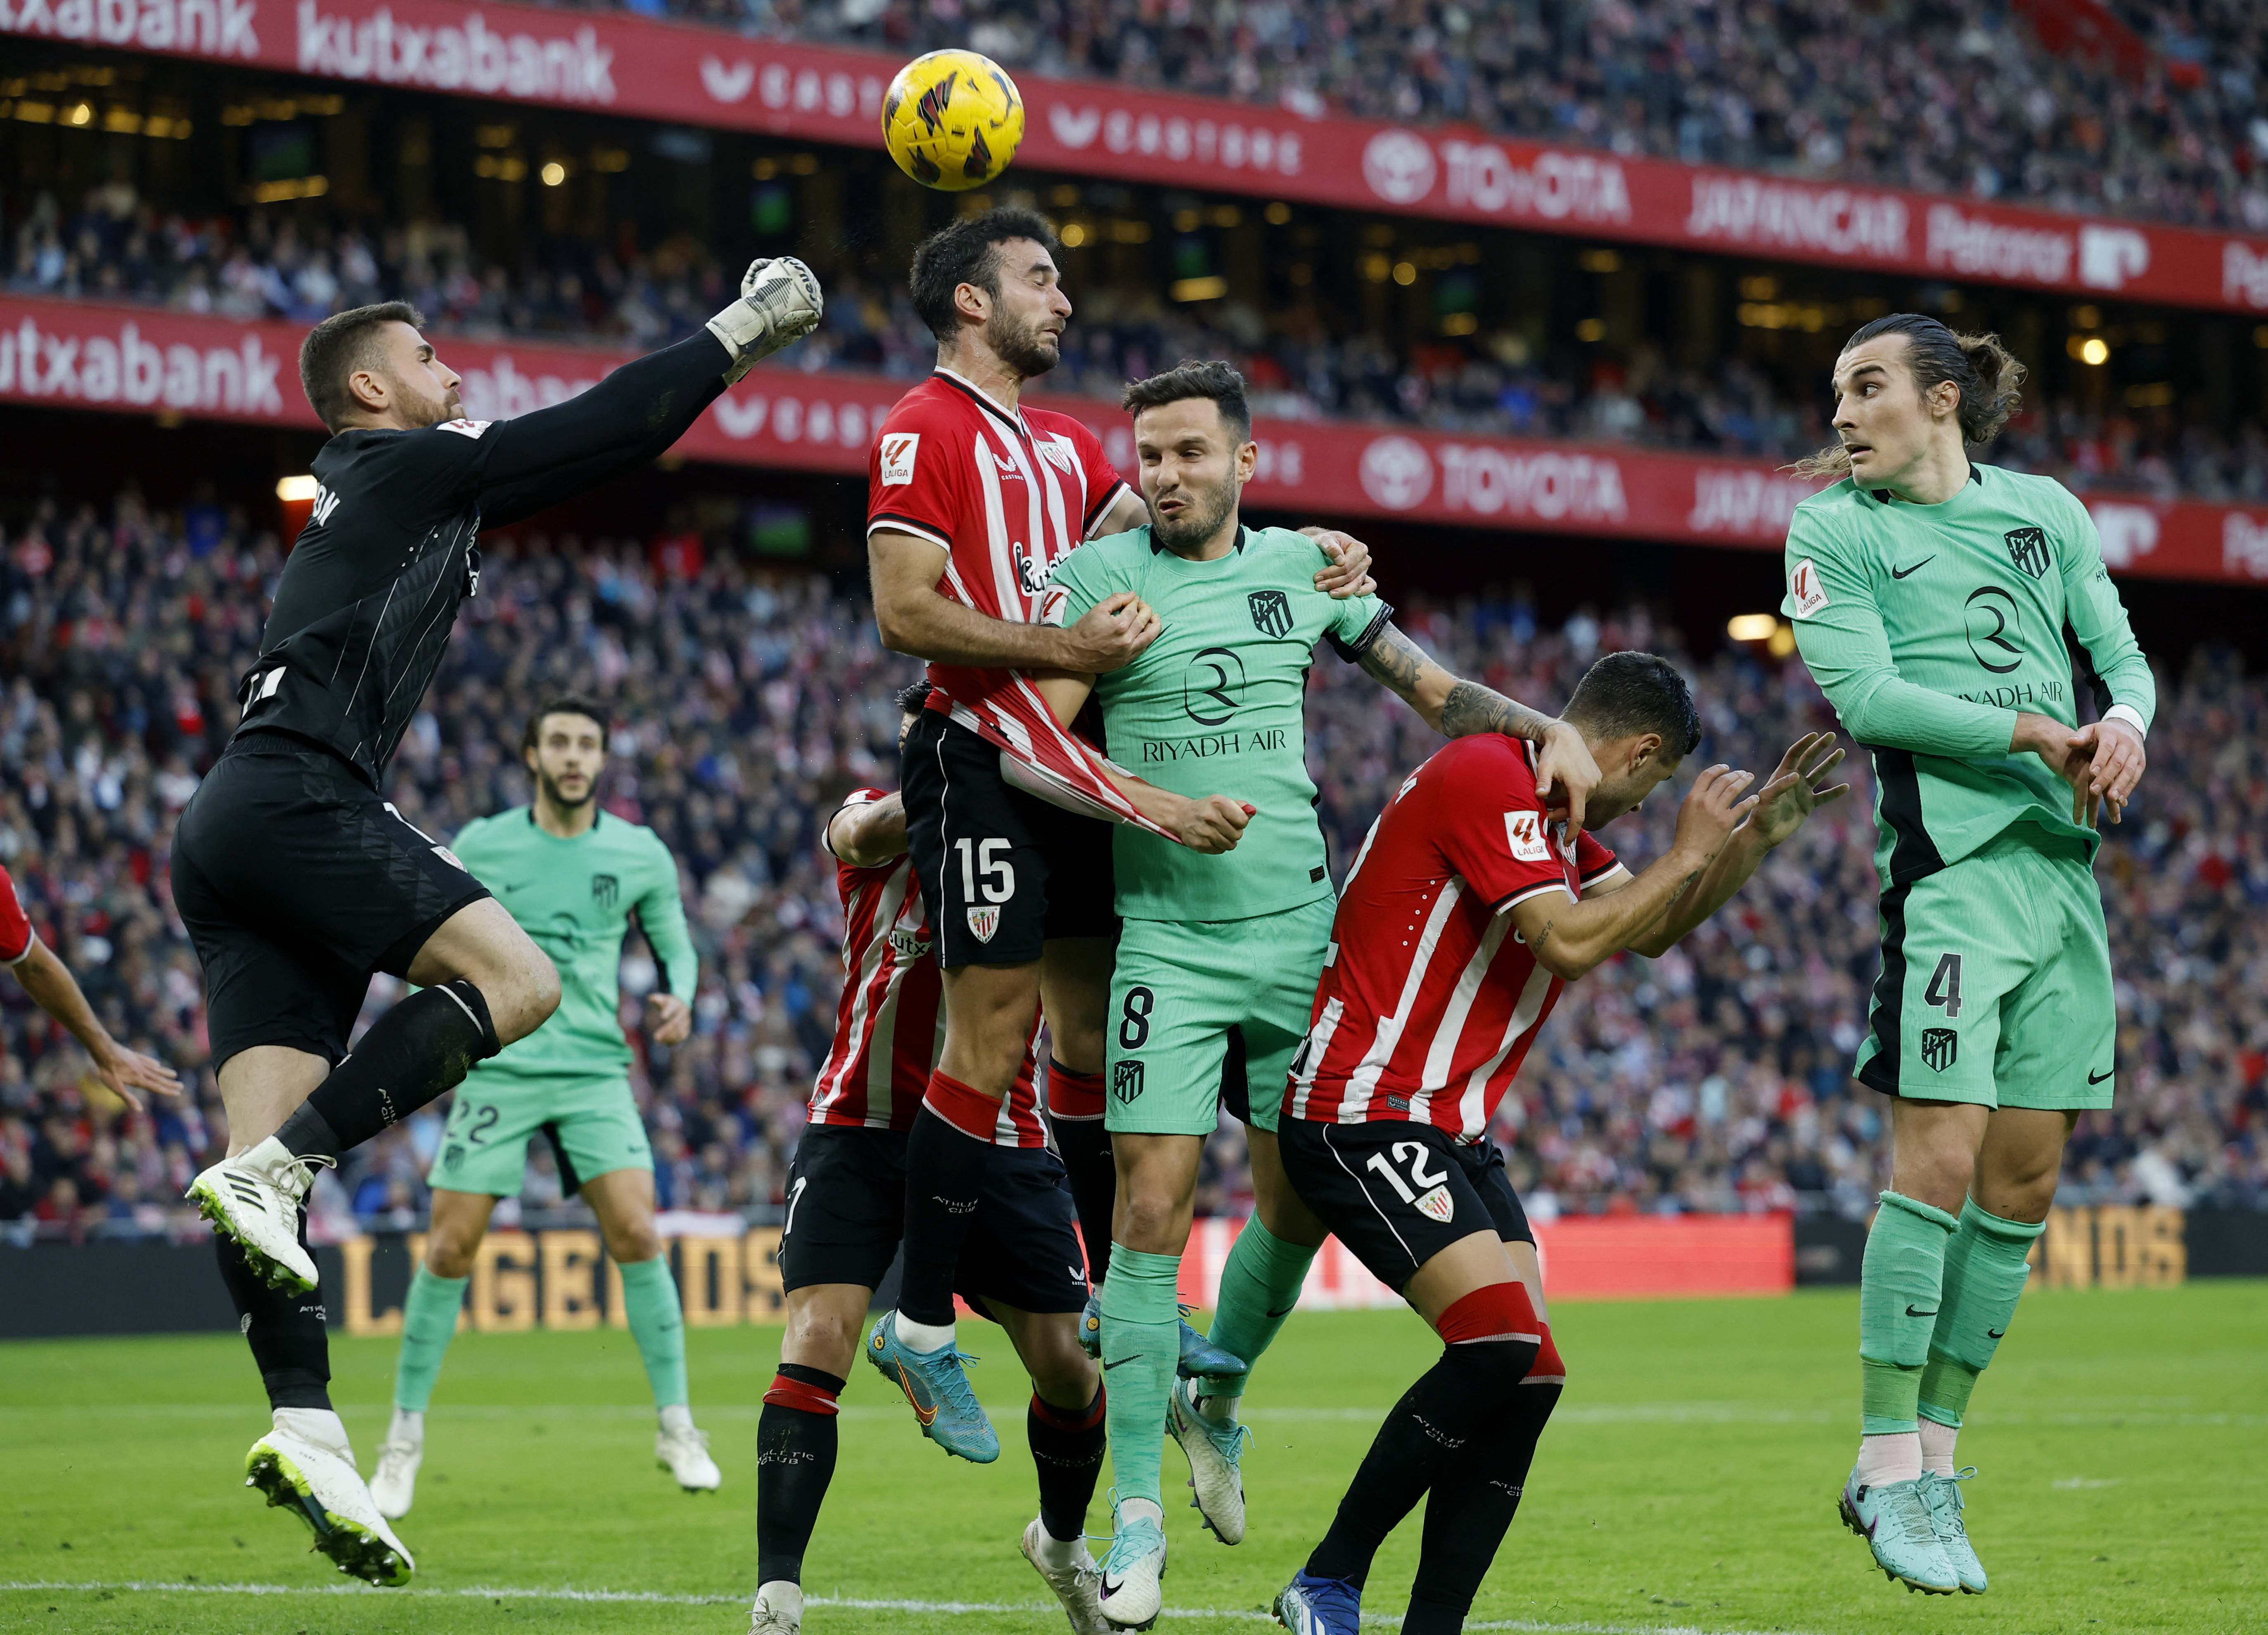 Bilbao vs atletico madrid